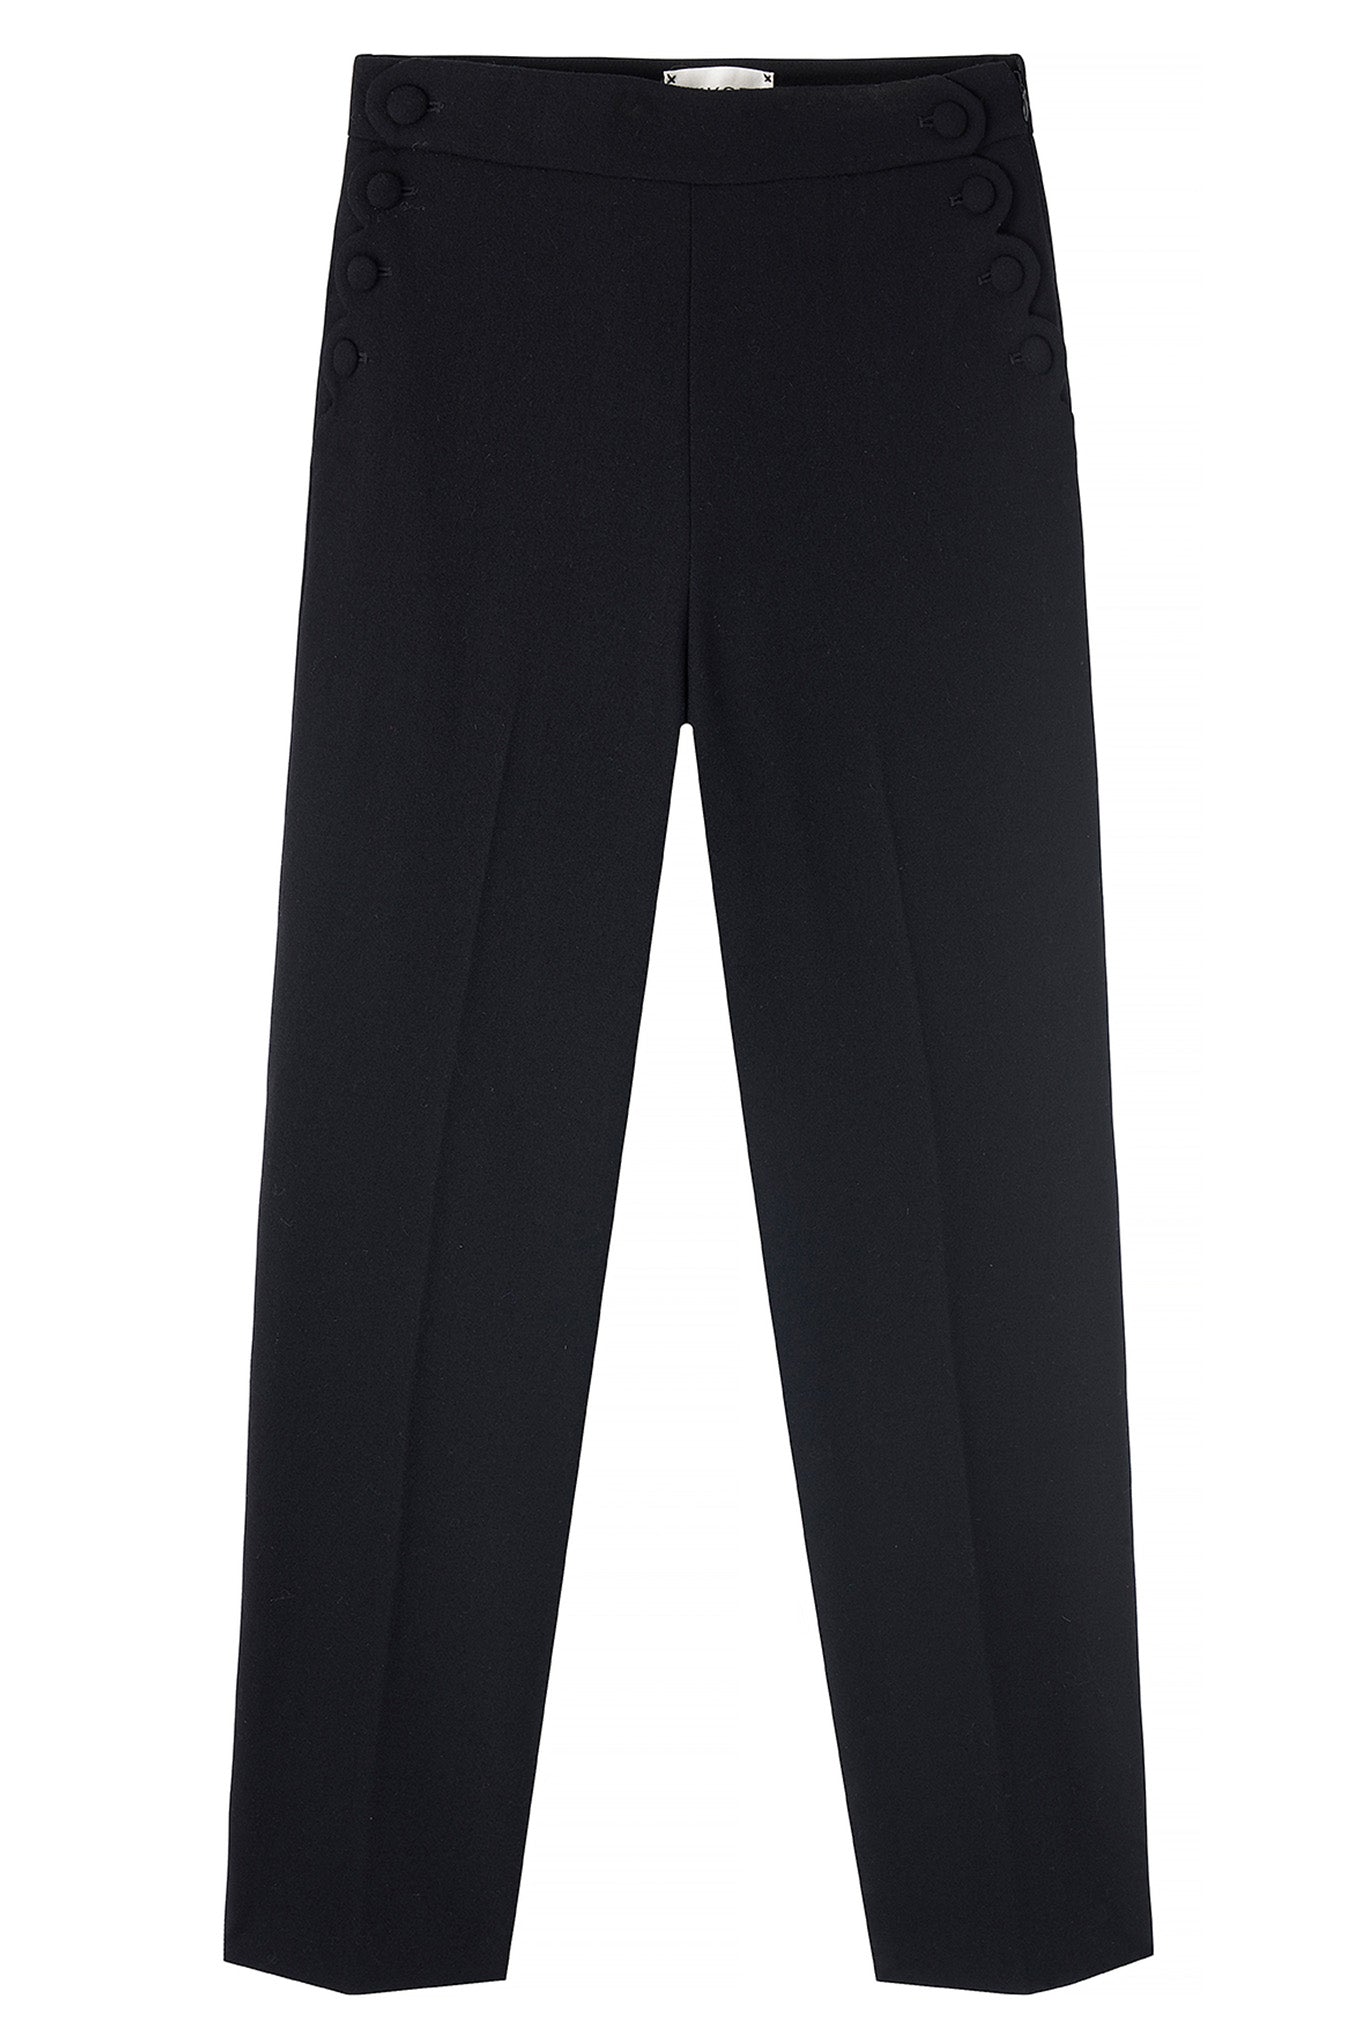 Sandrine Scallop Edge Trouser - Black - Longer Length — WYSE London